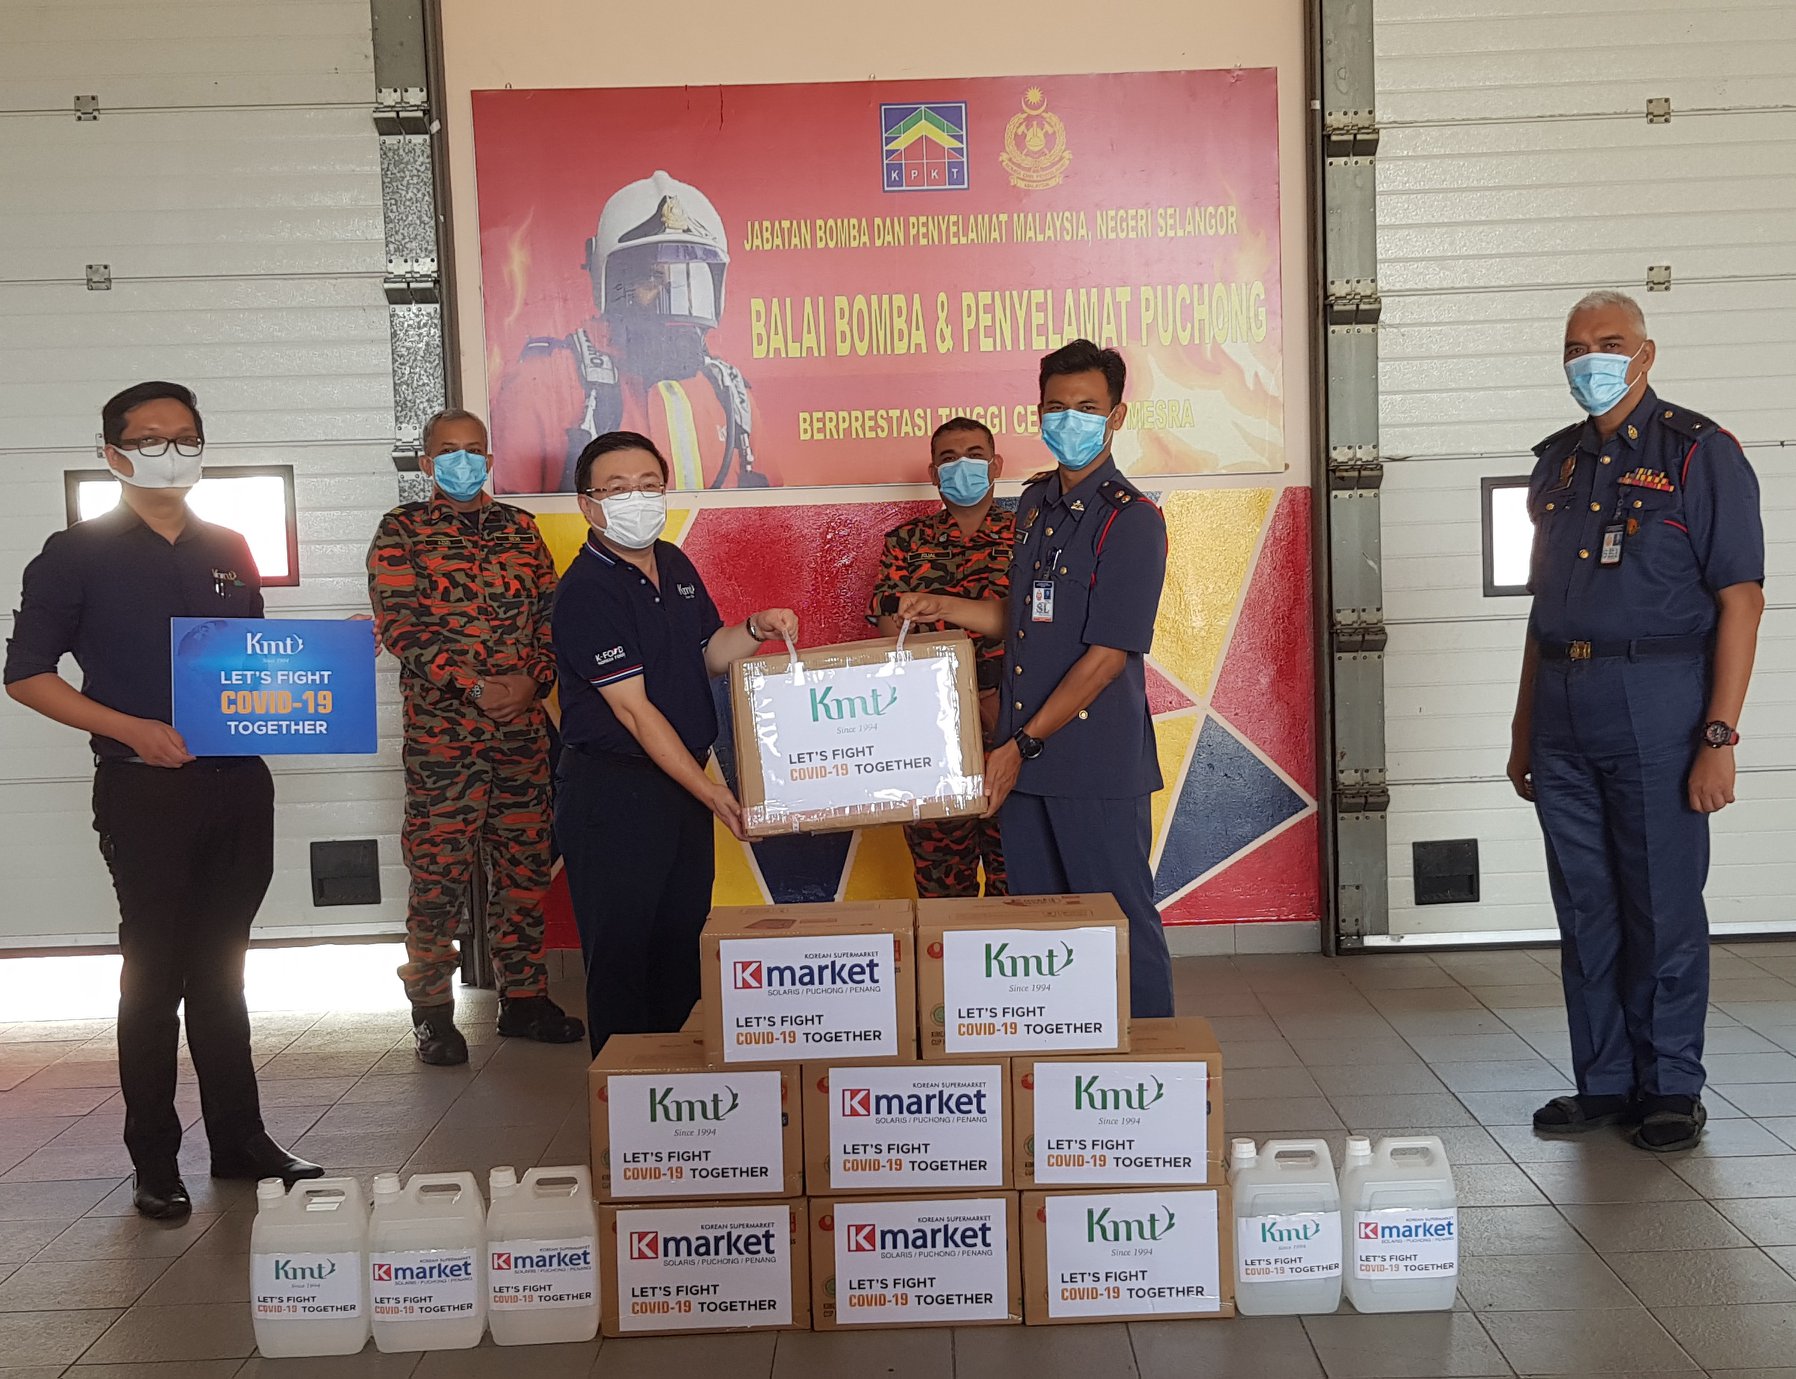 Covid-19 Donation: Balai Bomba dan Penyelamat Puchong